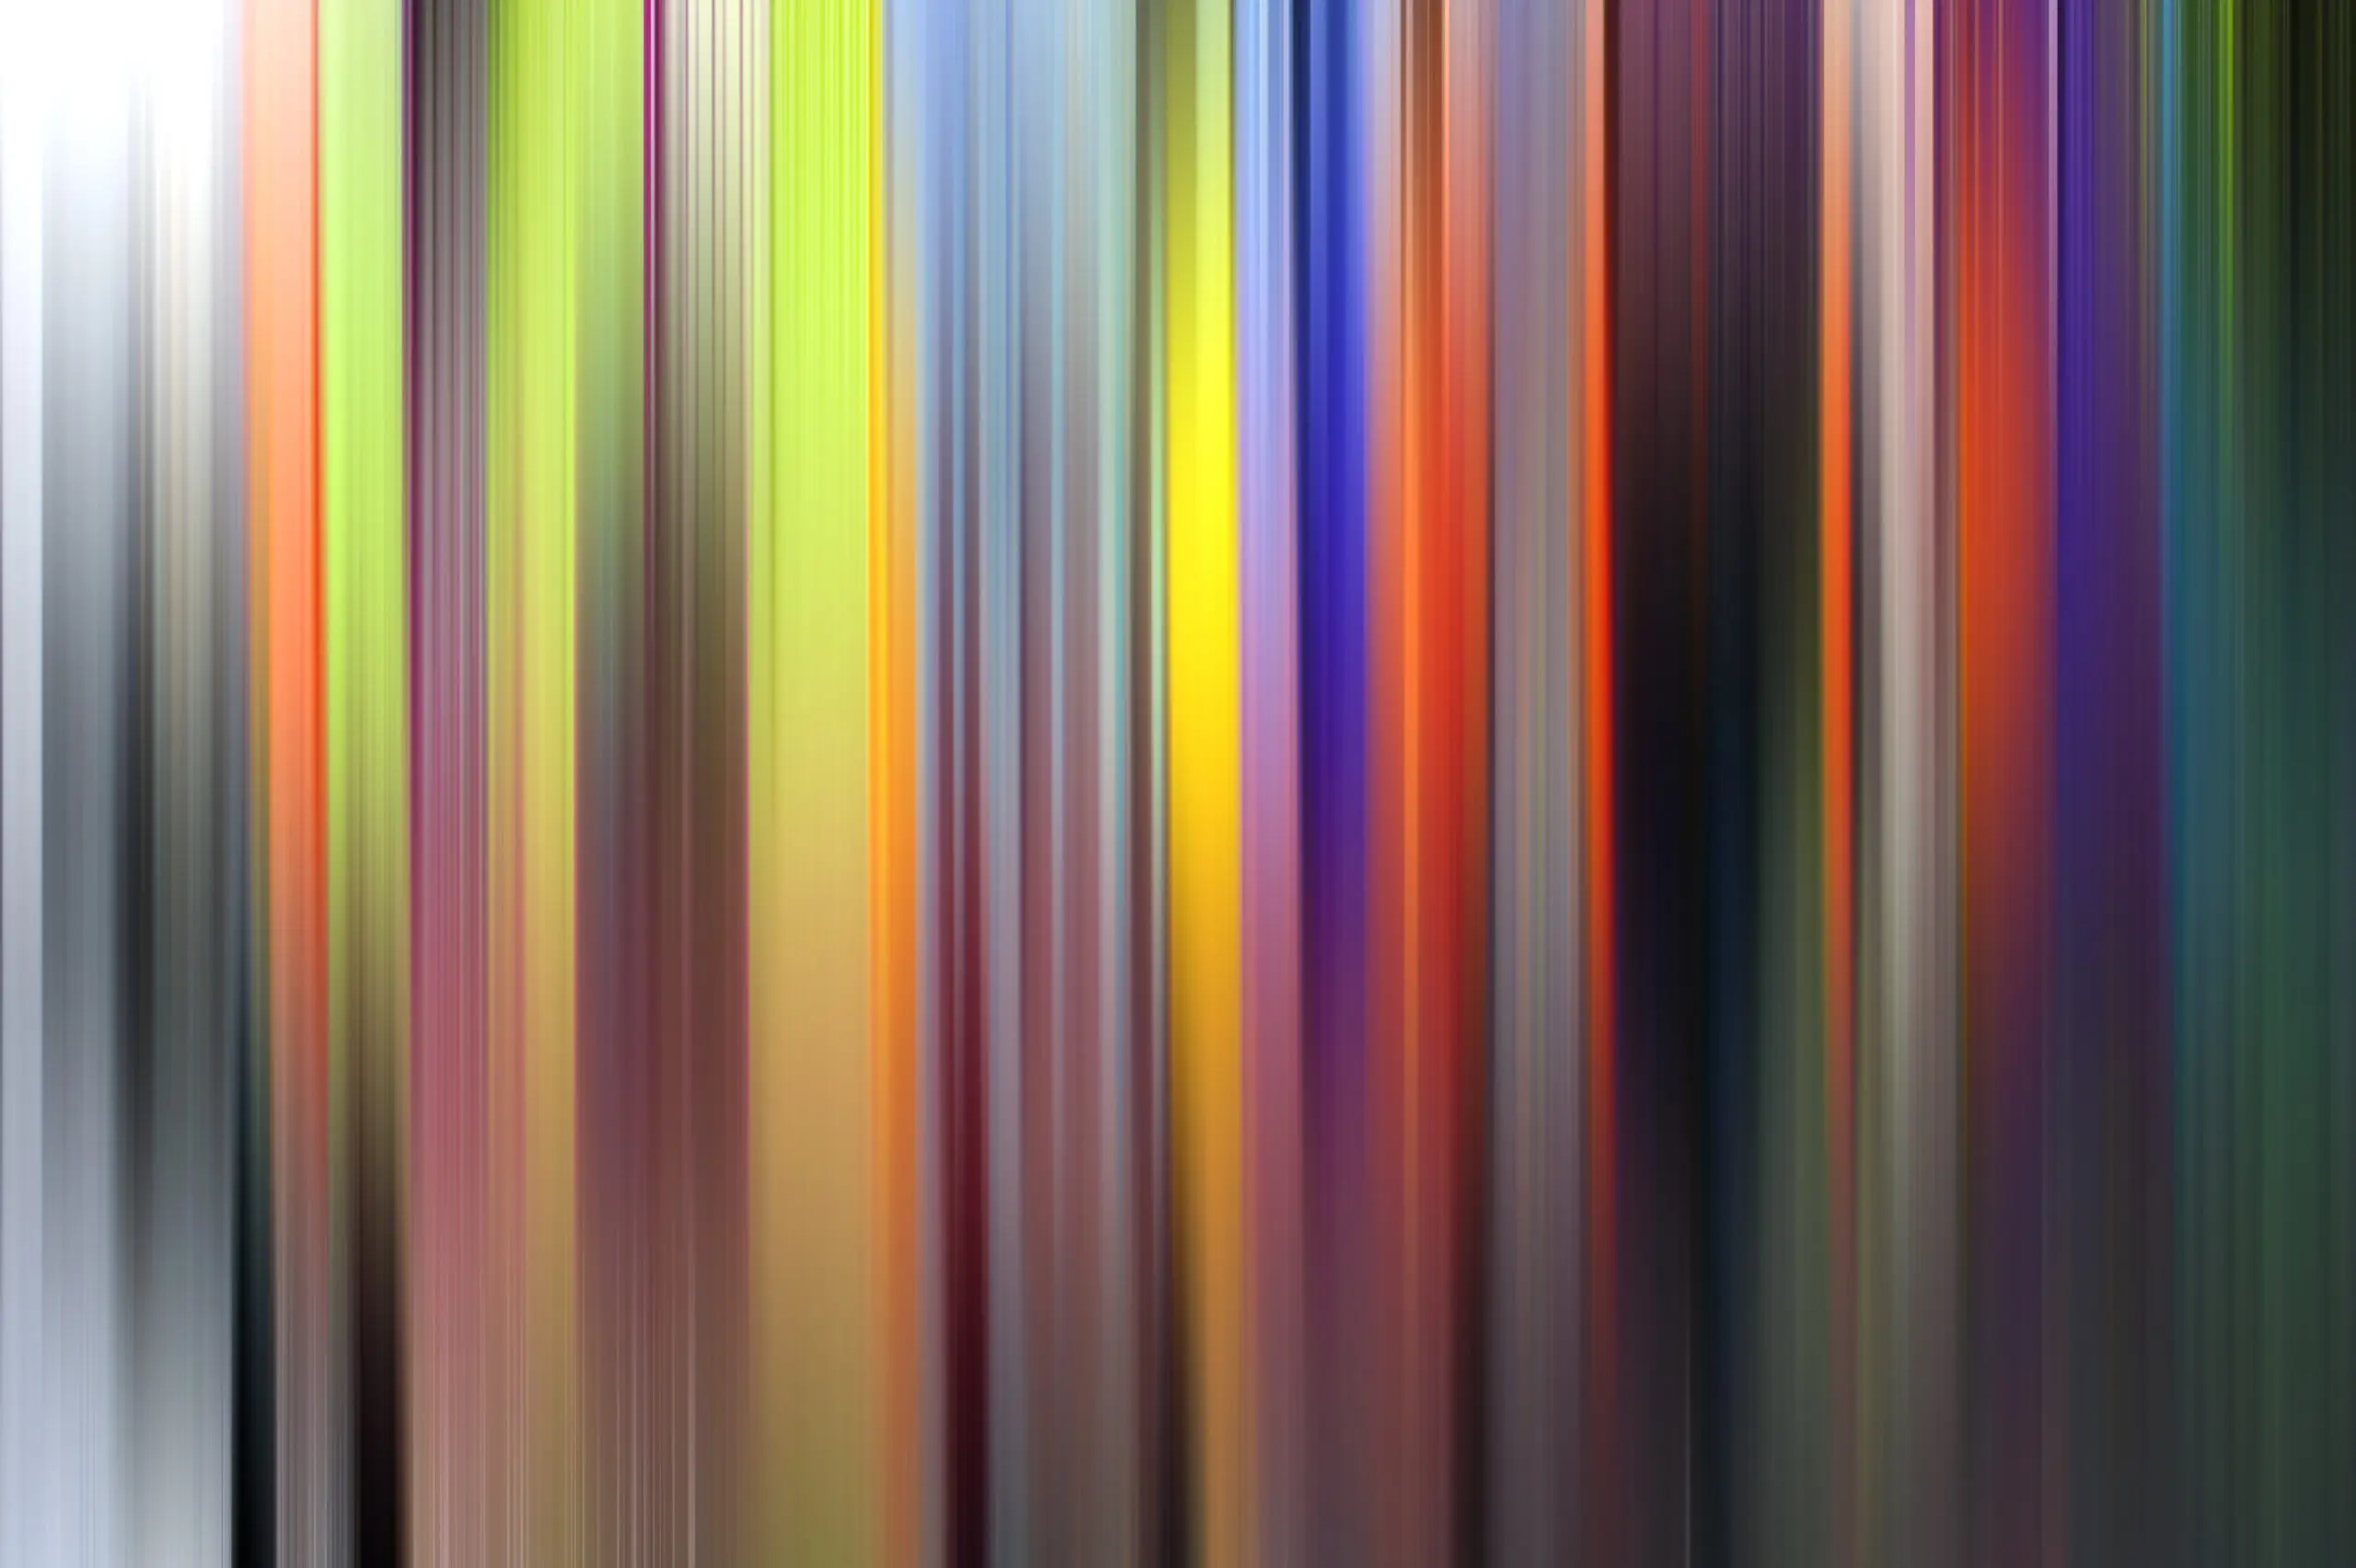 Wandbild (570) irisch colors 2 präsentiert: Abstrakt,Kreatives